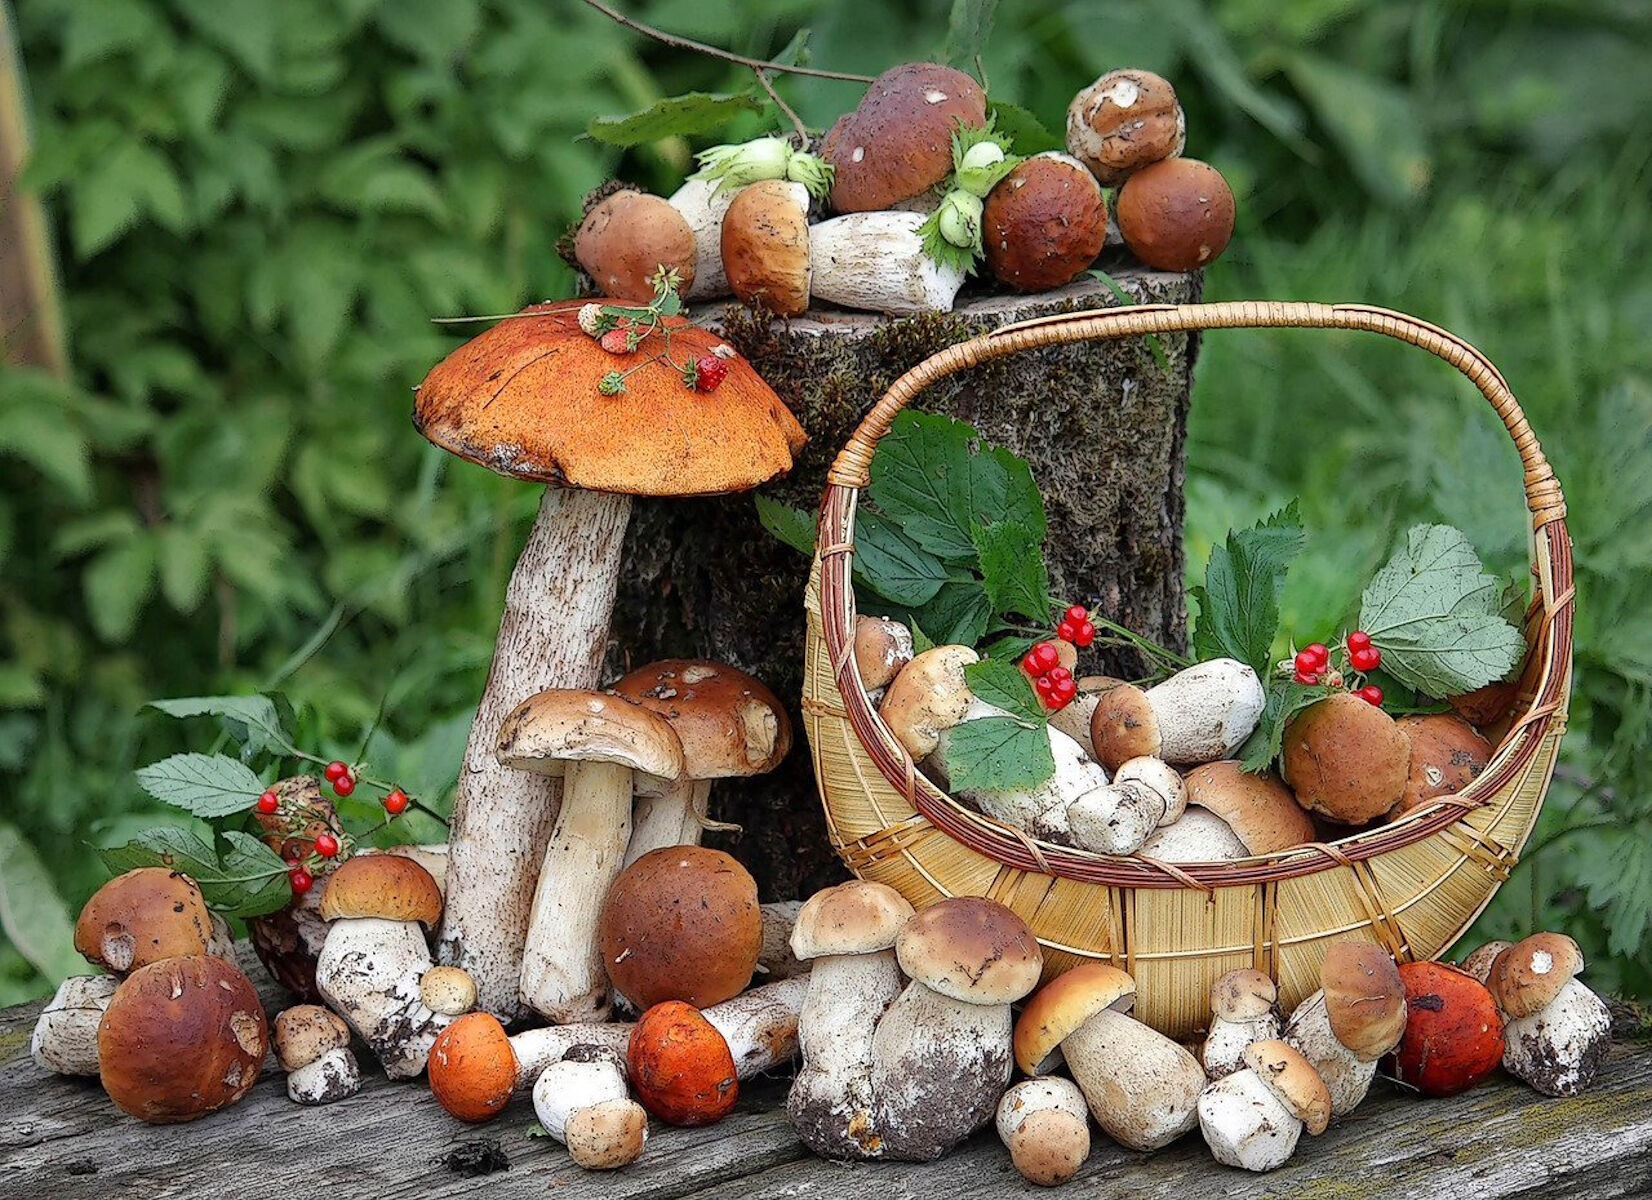 Грибы для людей и природы. Грибы и ягоды. Корзинка с грибами и ягодами. Осенние дары леса. Лесные ягоды и грибы.